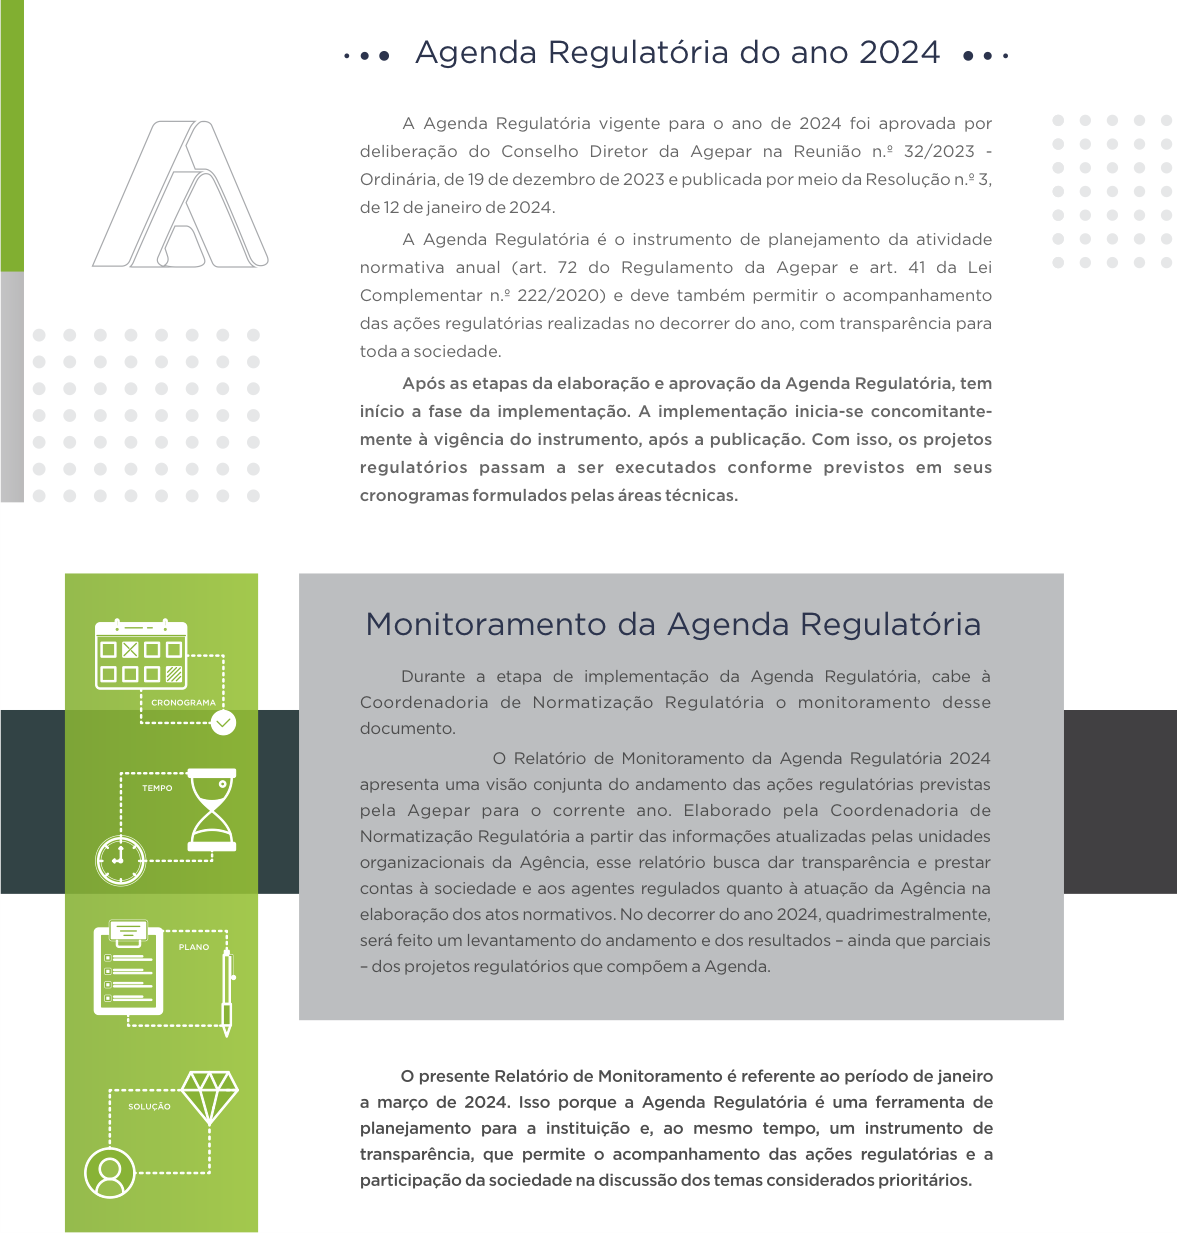 Agenda Regulatória do ano de 2024